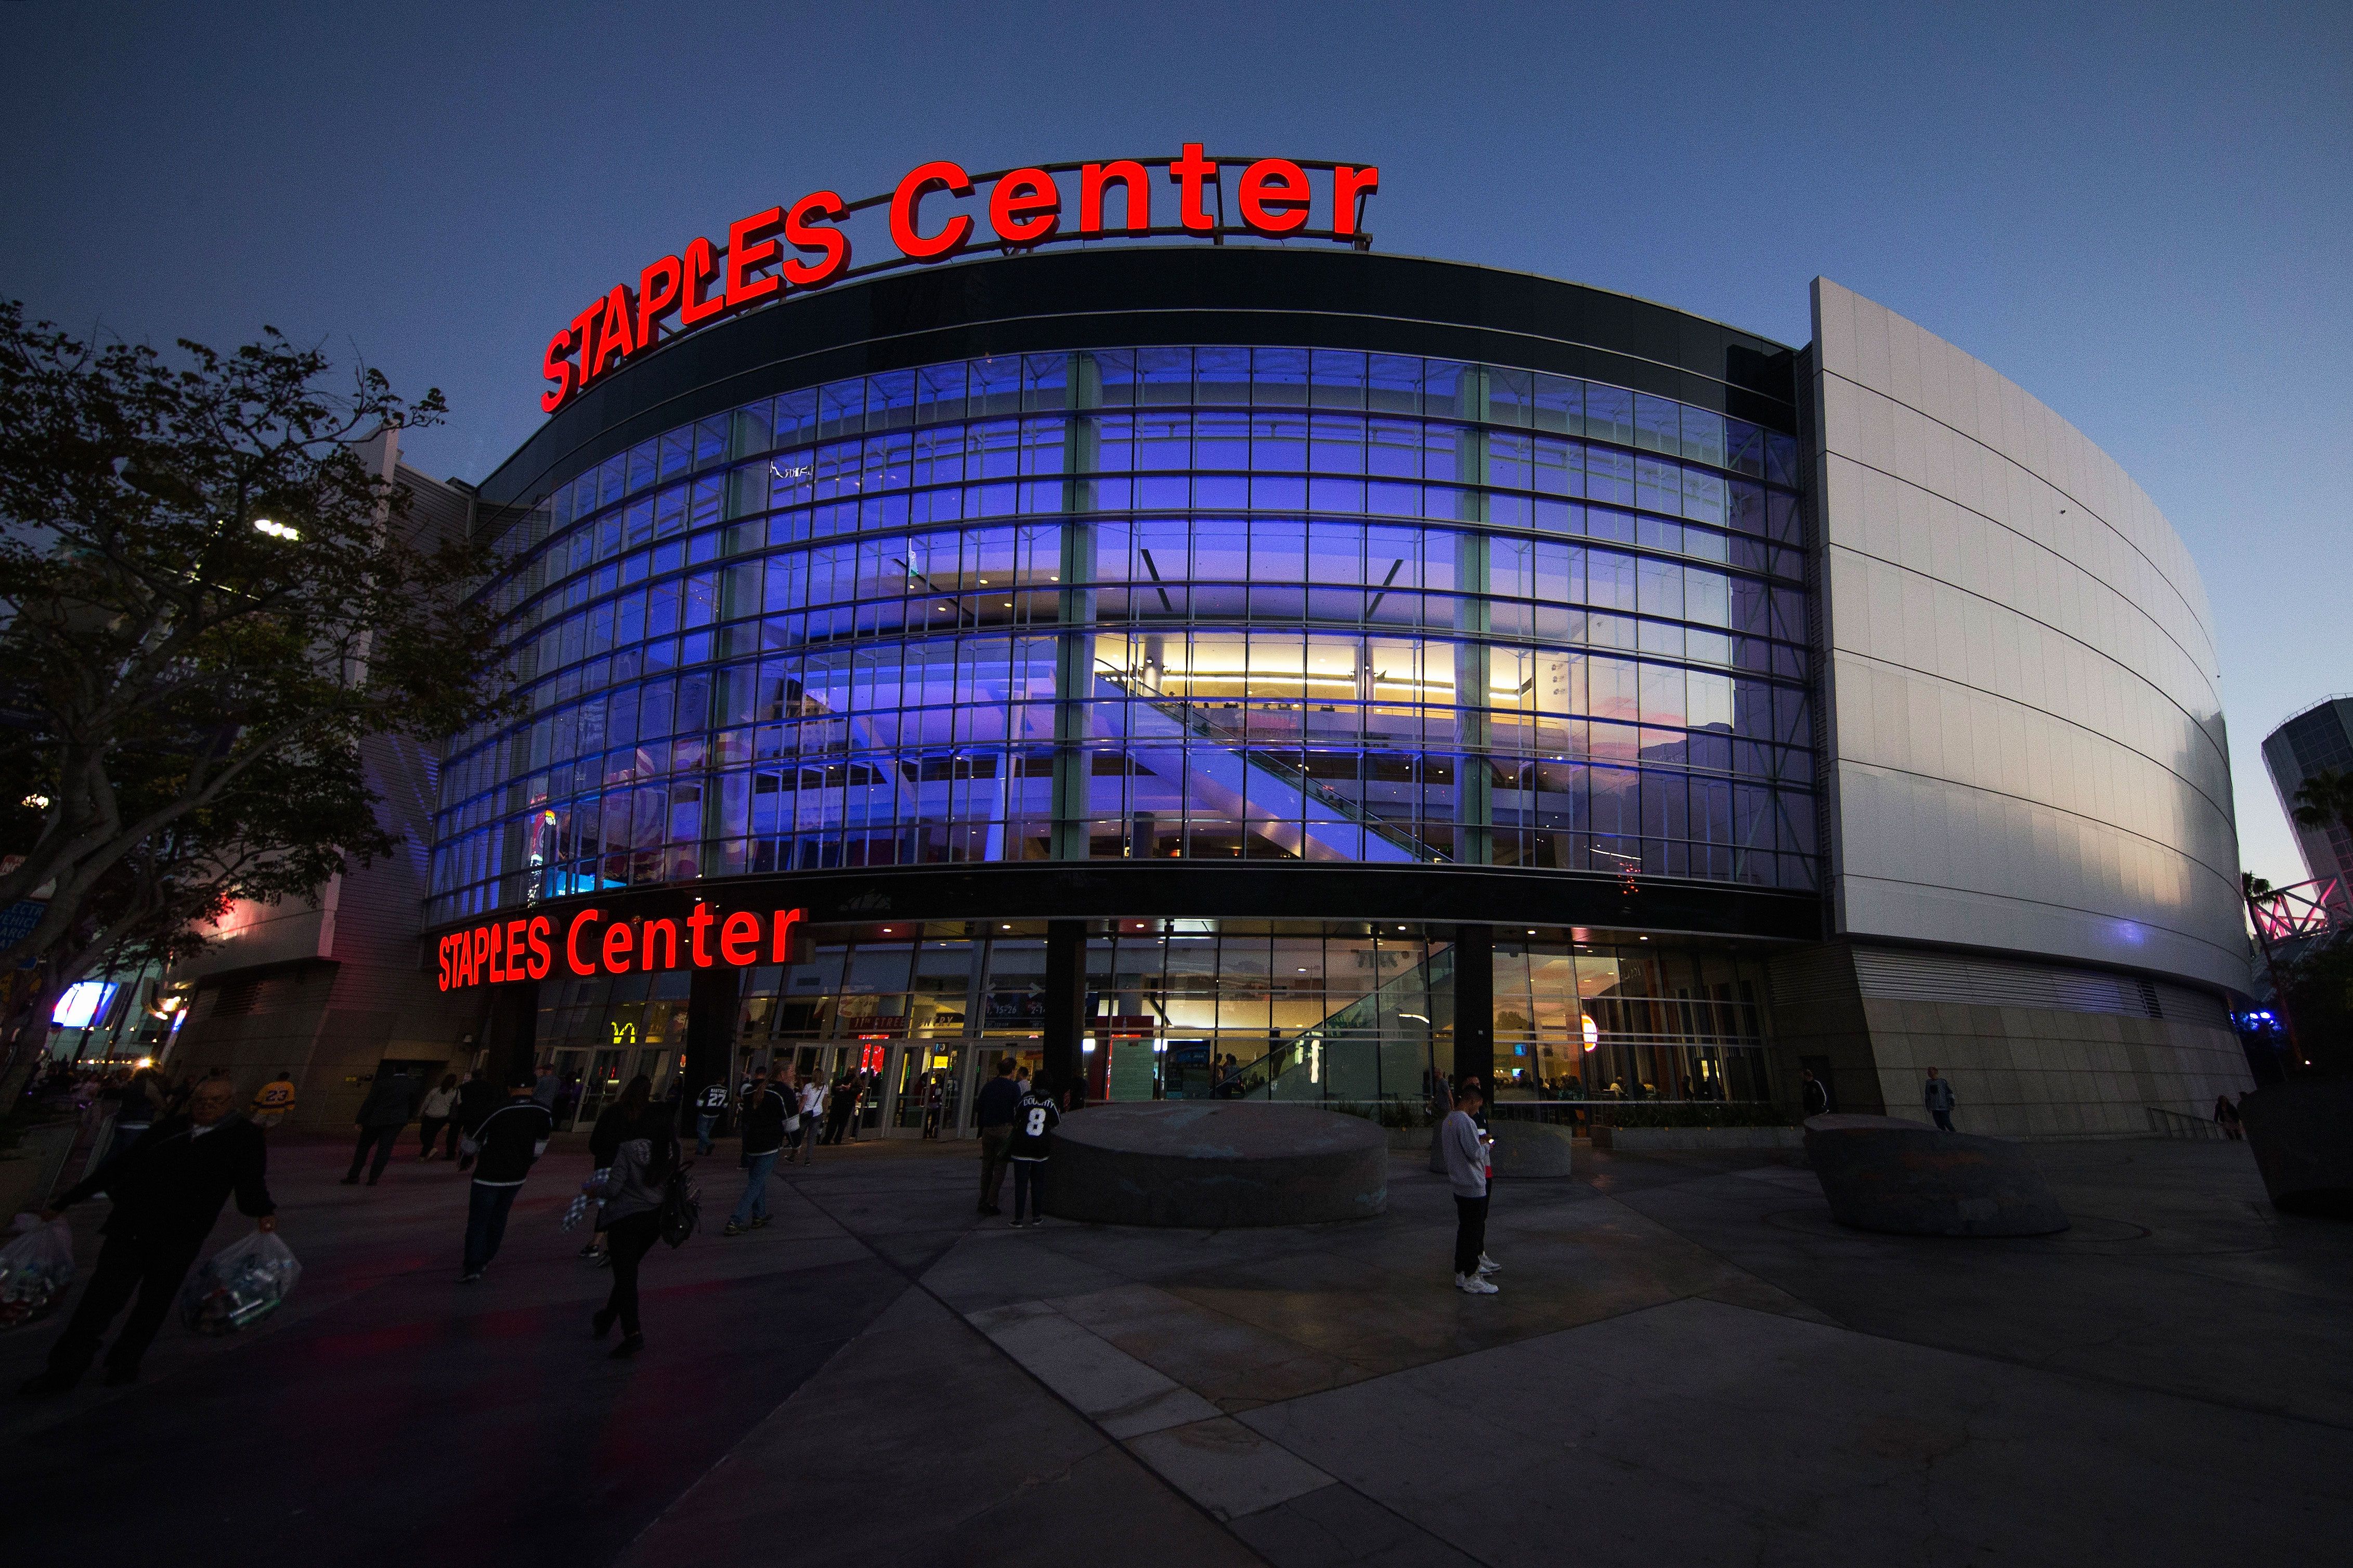 Staples Center to be renamed Crypto.com Arena beginning Dec. 25